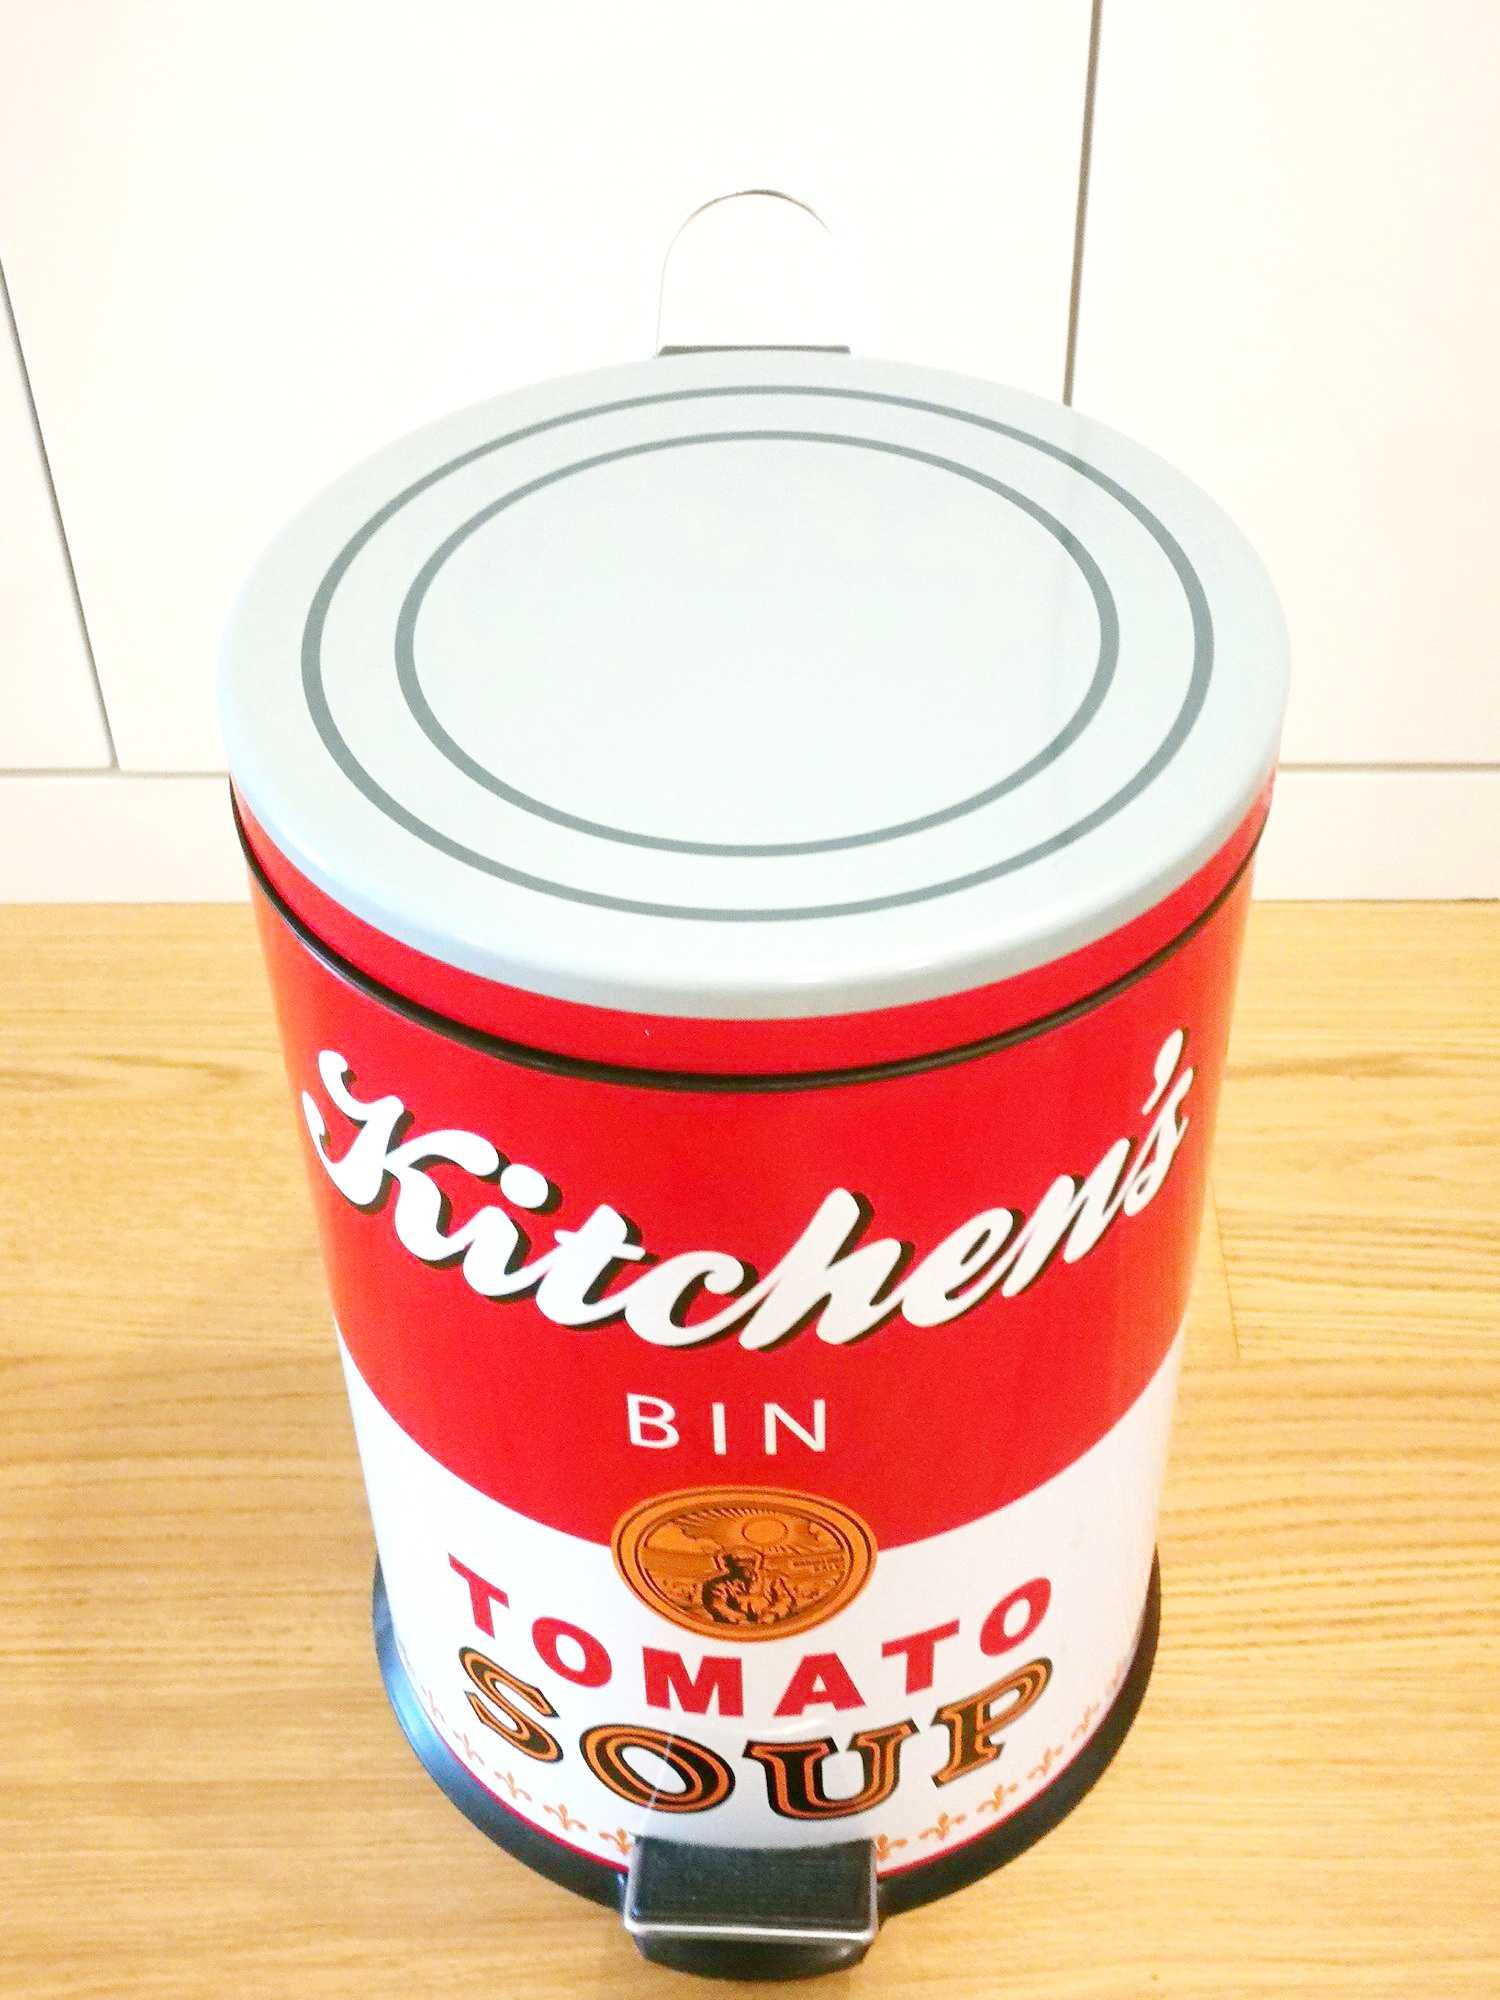 Caixote Lixo replica sopa de tomate campbell's tomato soup